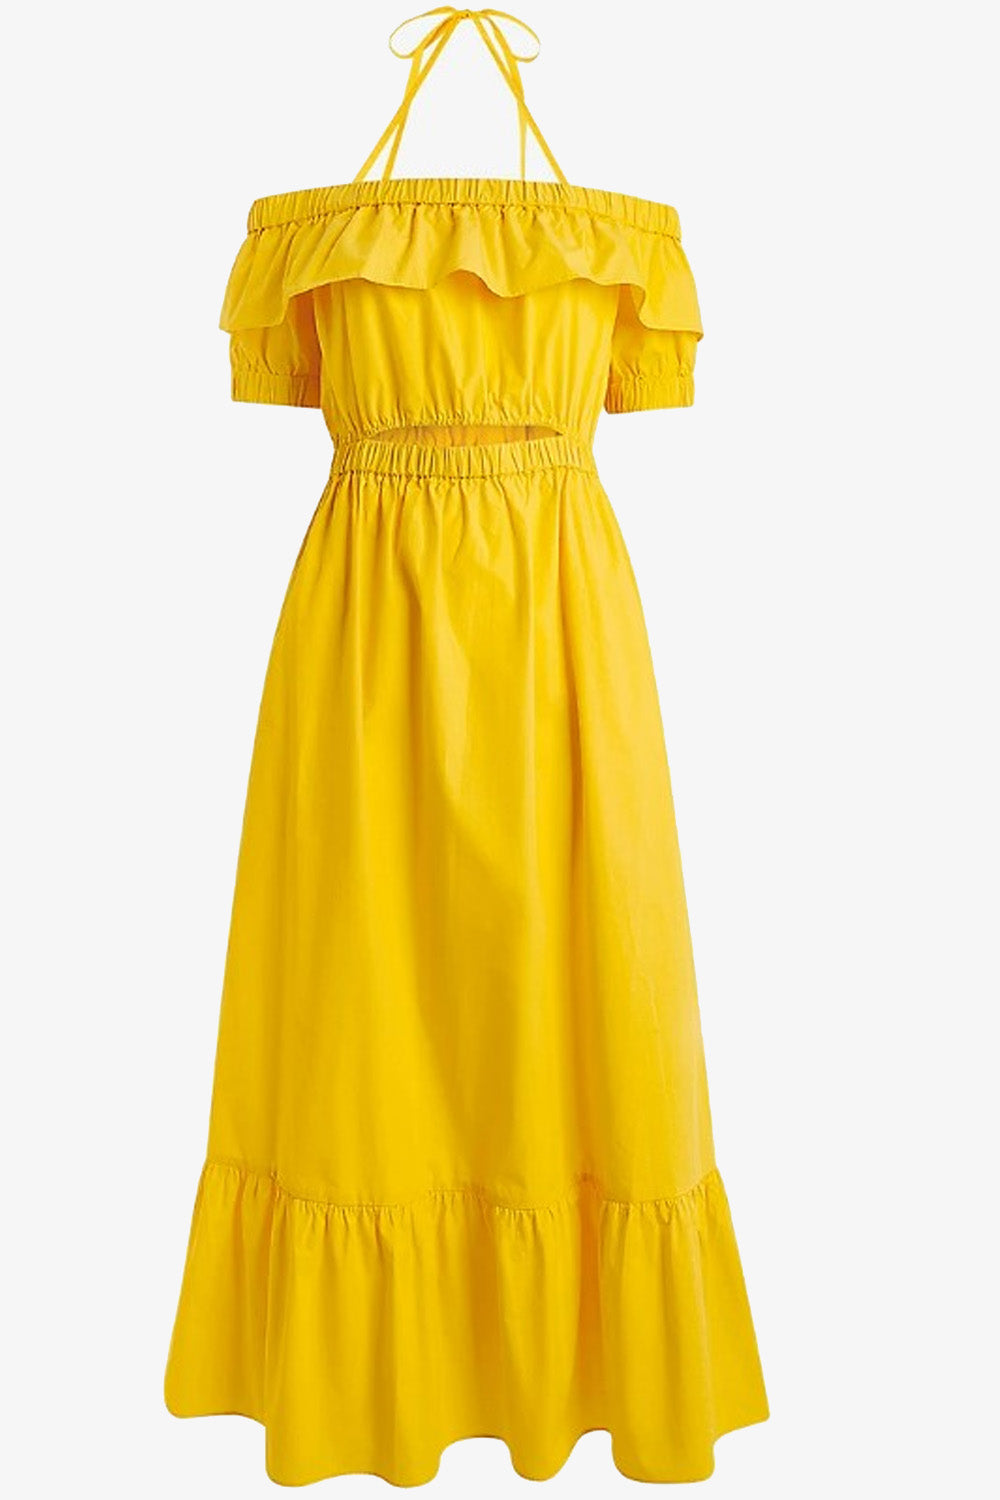 Nebulous yellow Dress